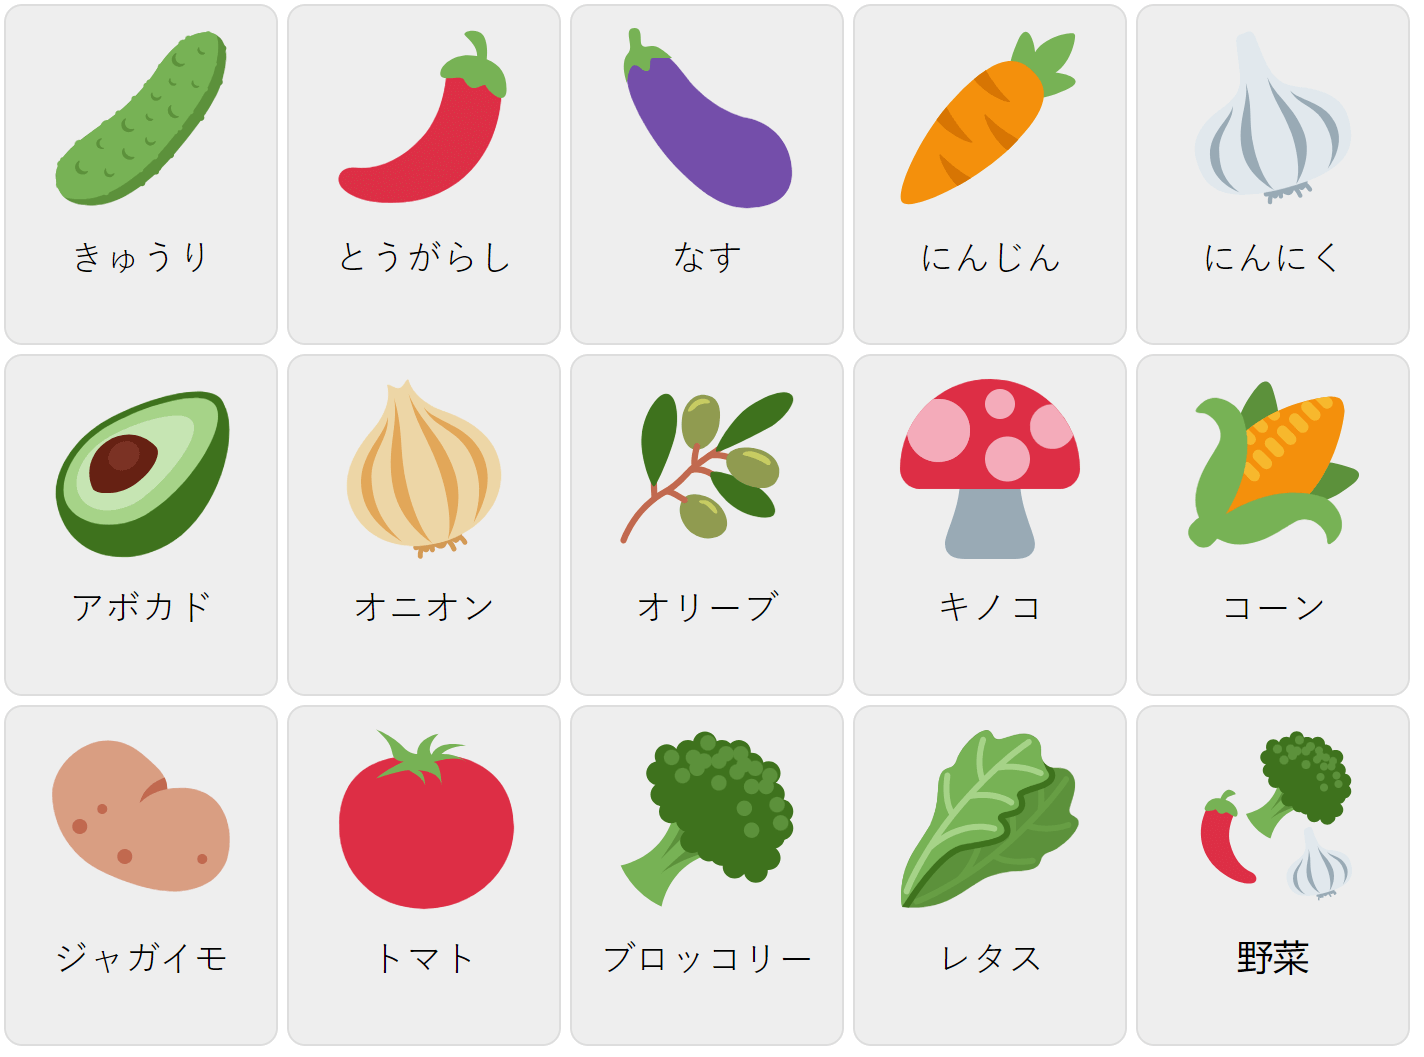 Овочі на японській мові